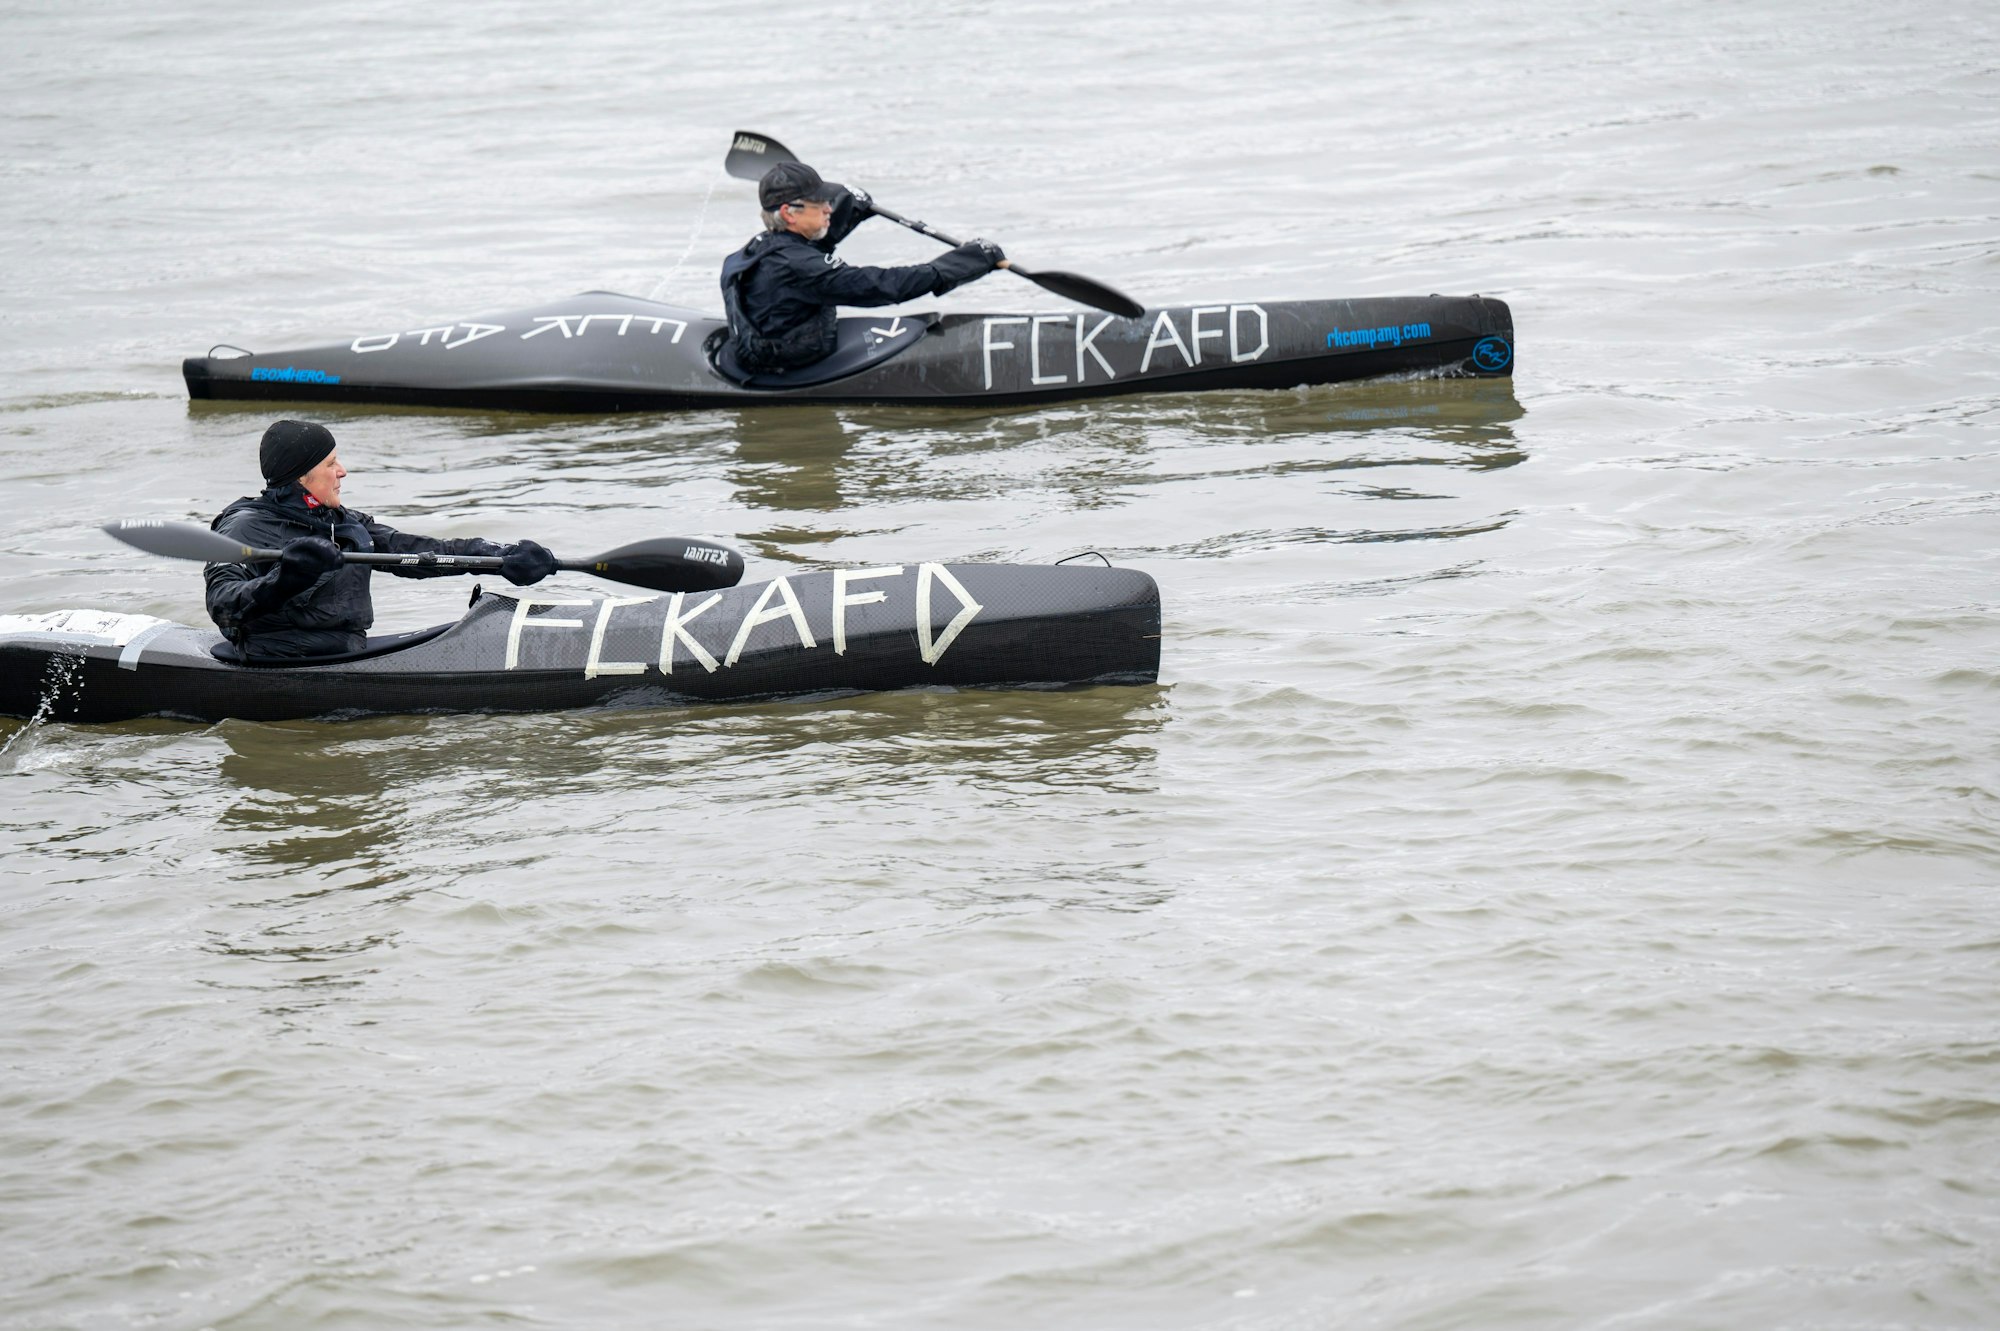 Kanuten auf dem Rhein haben FCK AfD auf ihre Boote geschrieben.